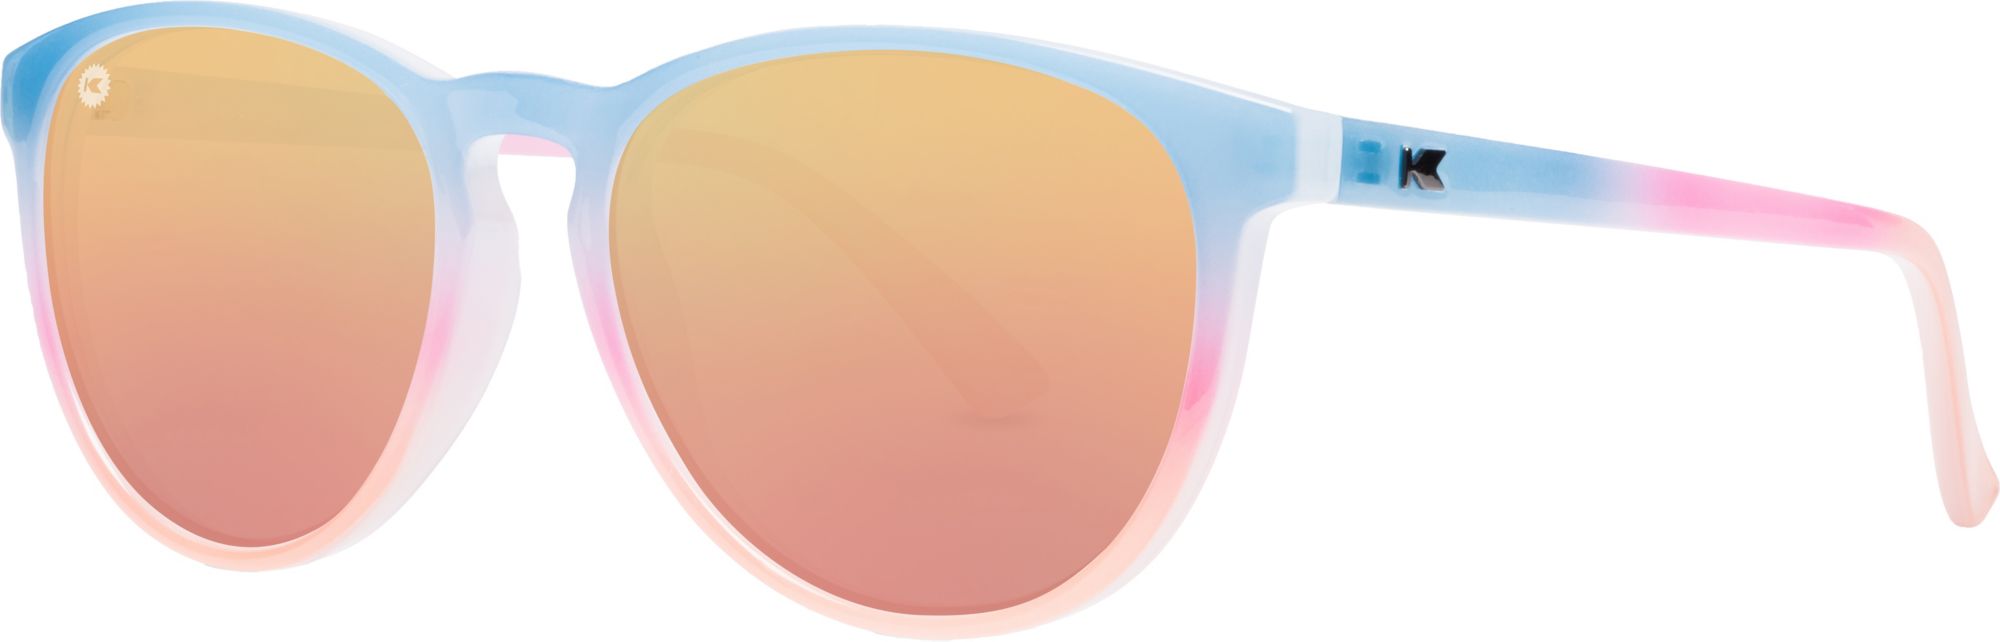 Knockaround Mai Tais Polarized Sunglasses